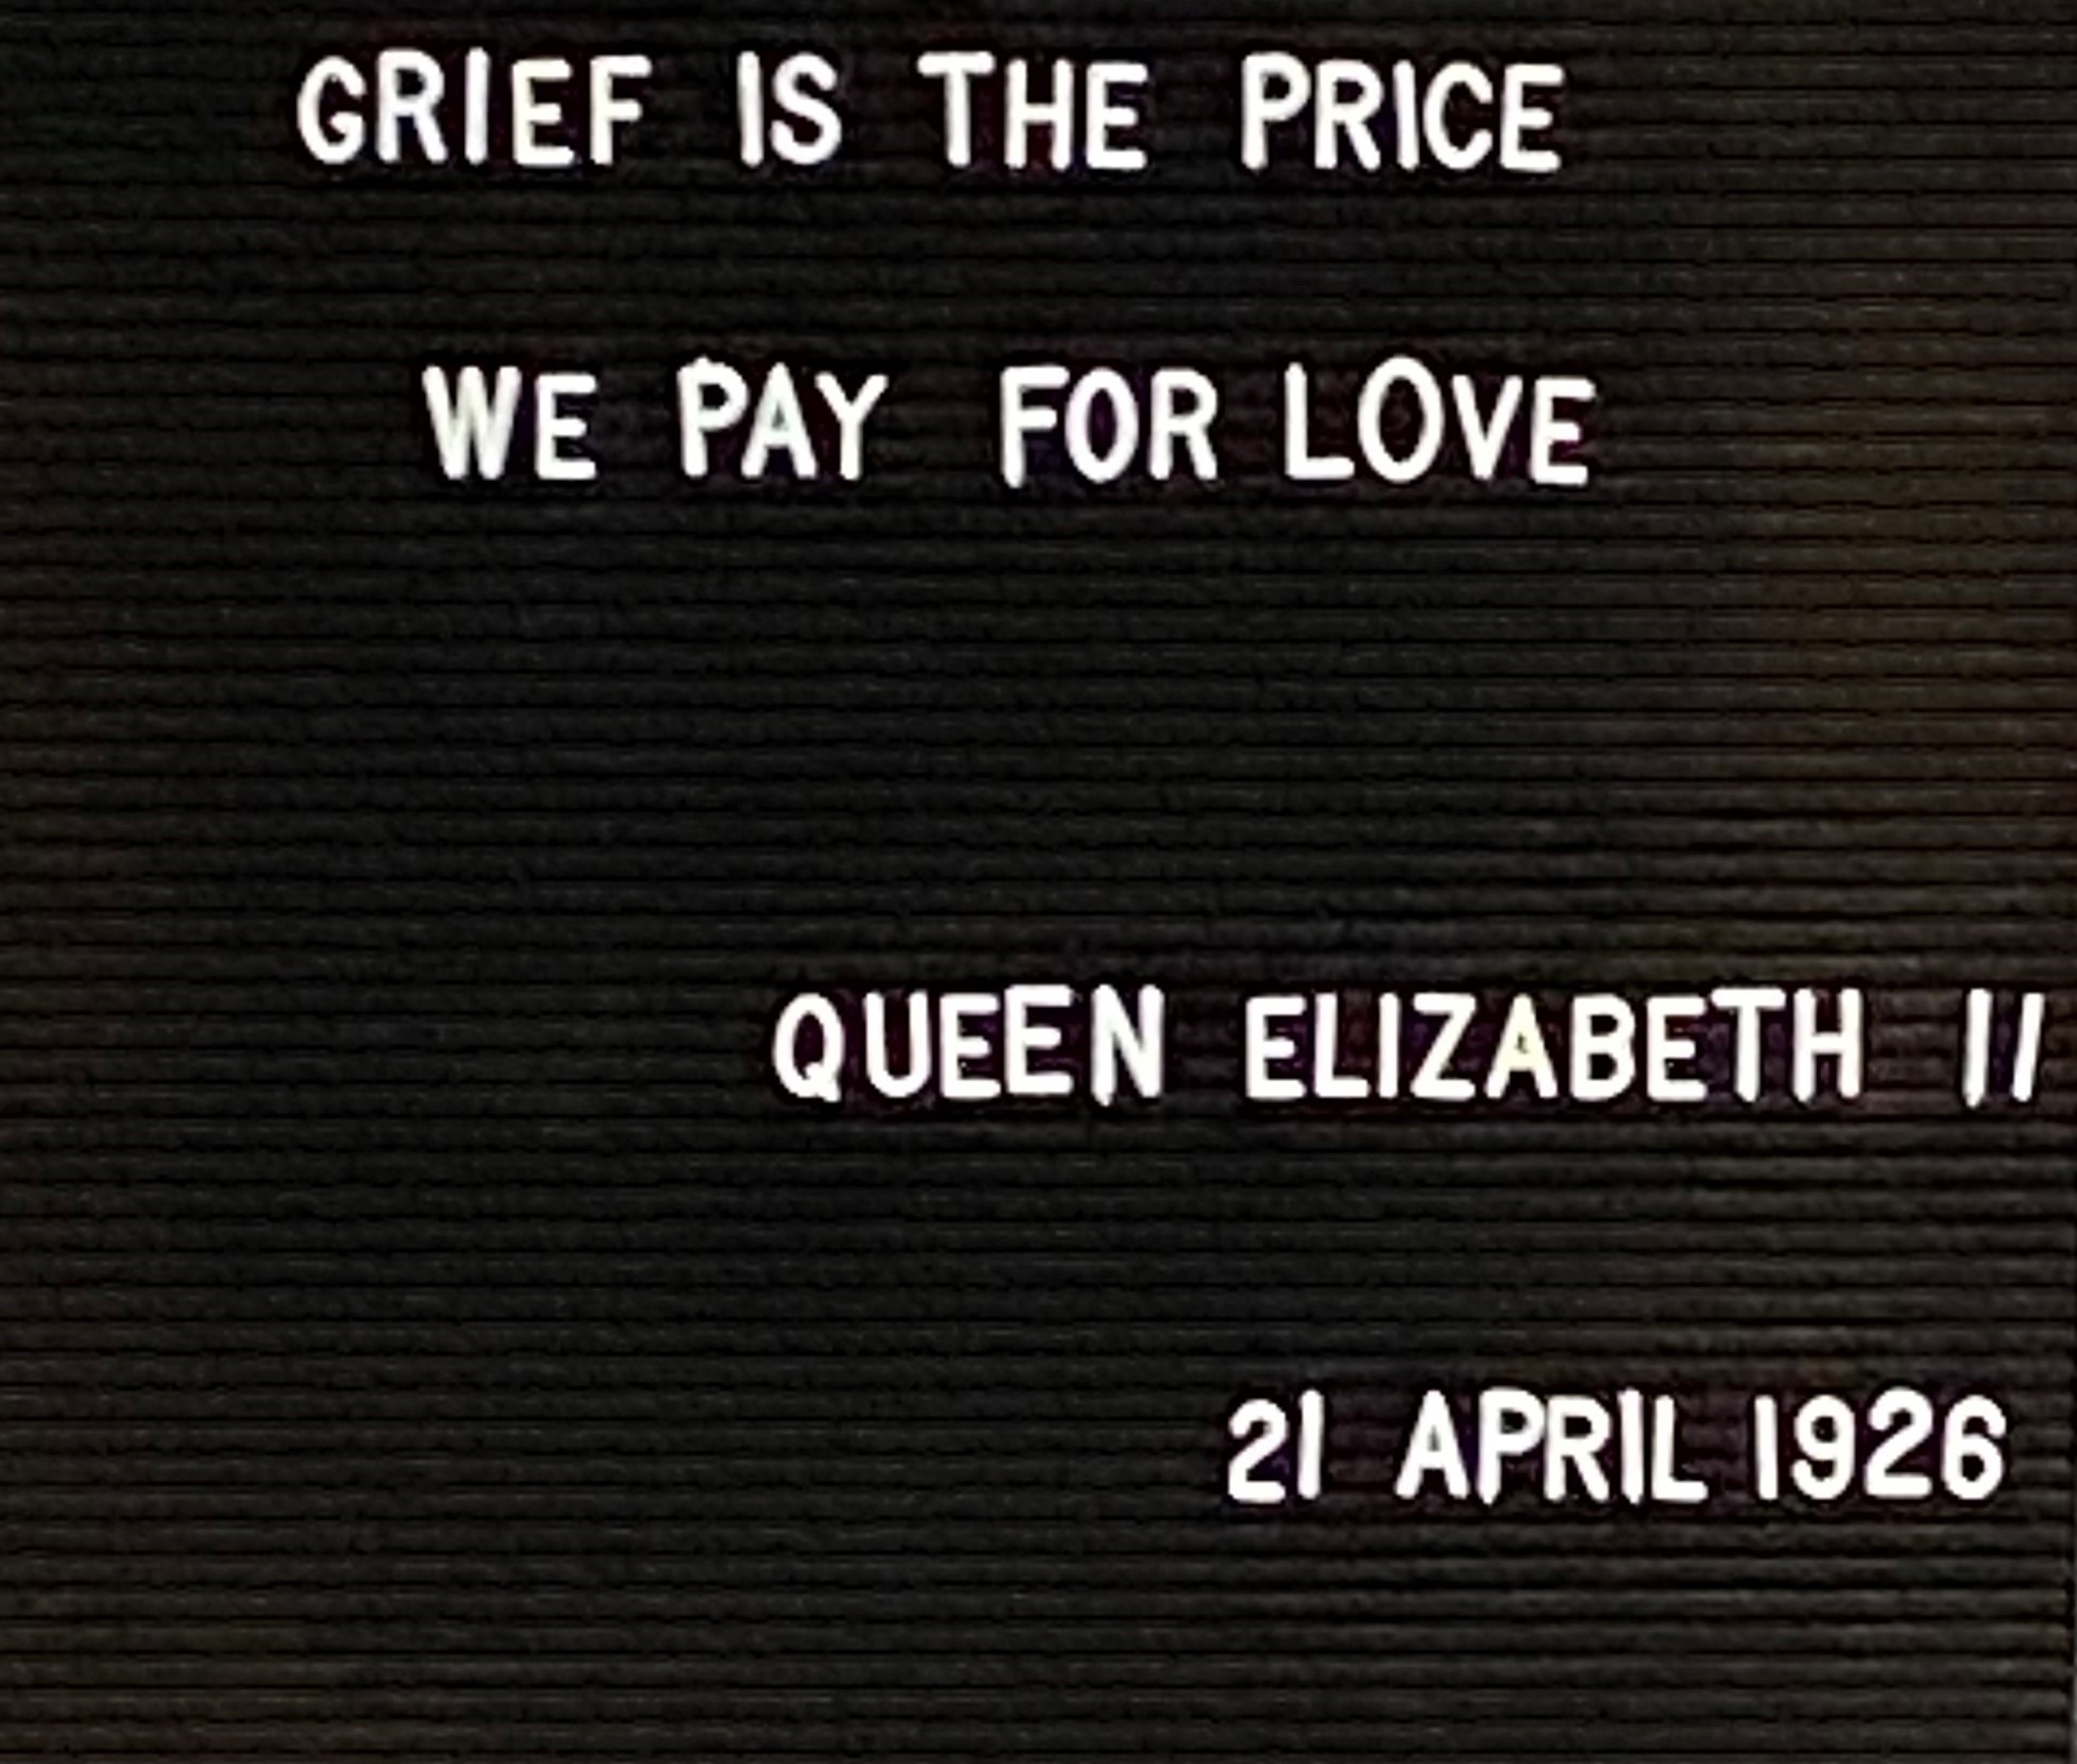 Queen Elizabeth II Quote about Love